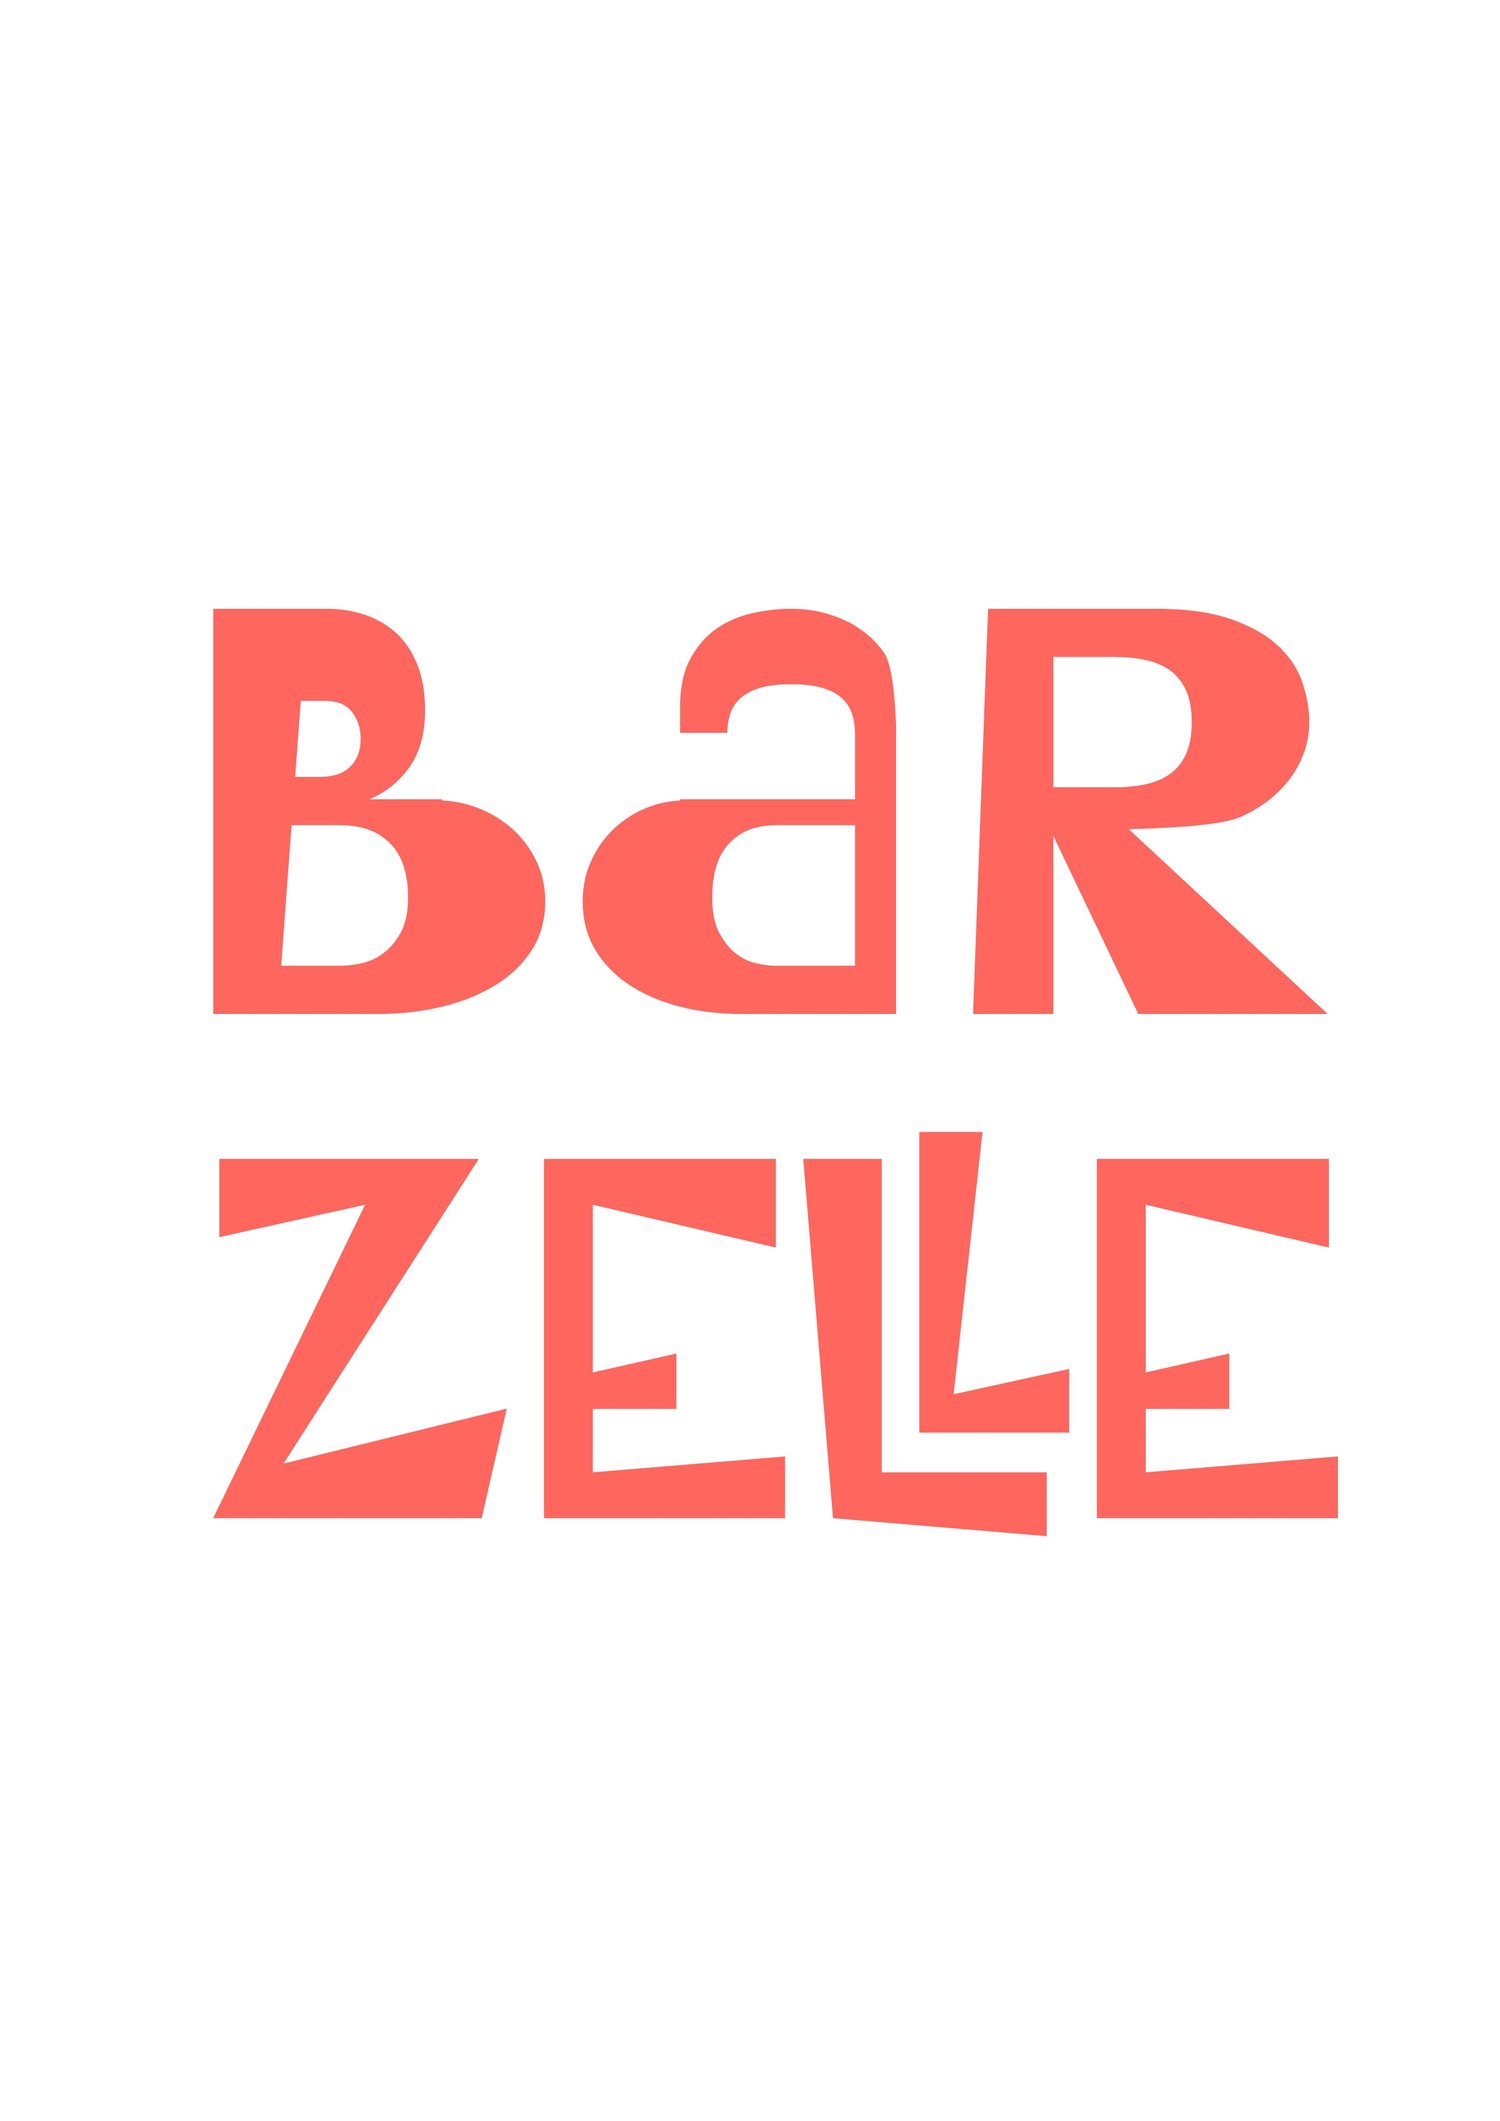 Bar Zelle